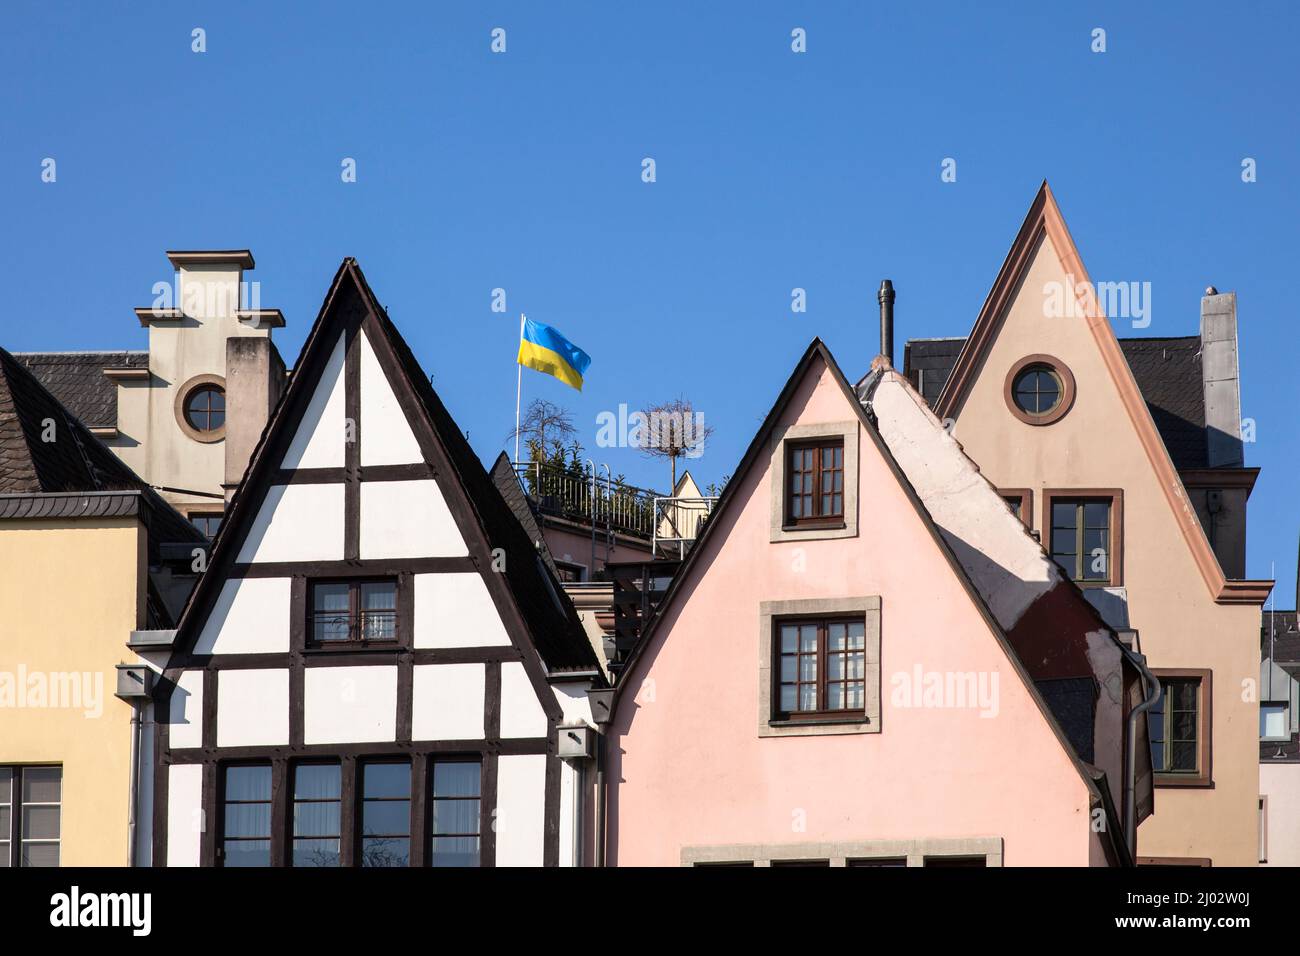 In solidarietà con l'Ucraina, la bandiera Ucraina sventola sui tetti della città vecchia, Colonia, Germania. 3 marzo 2022. Aus Solidaritaet mit der Ukr Foto Stock